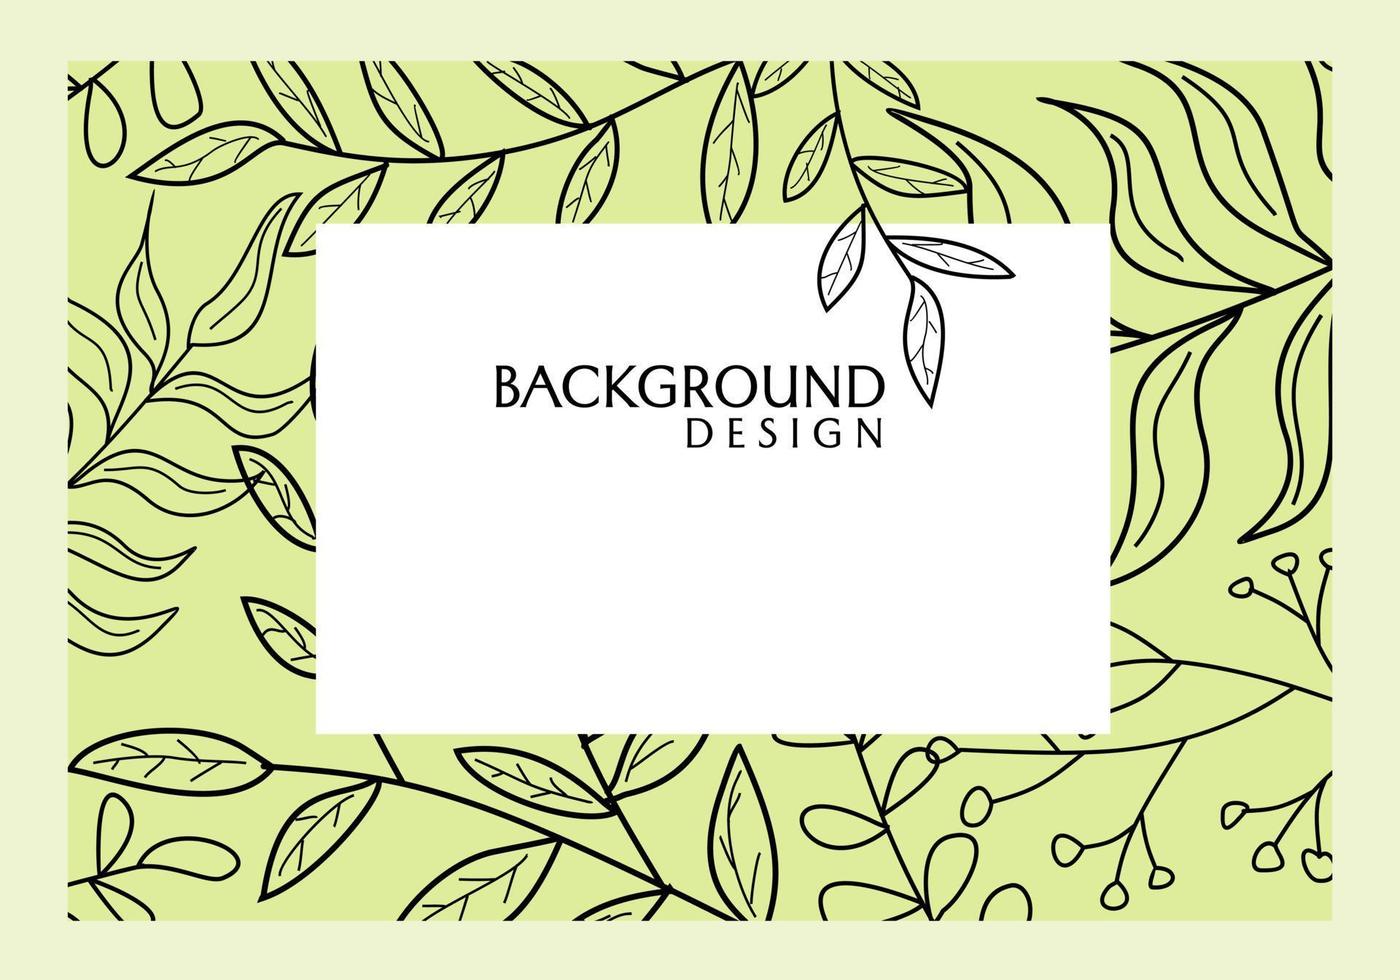 abstracte achtergrond banner vector design met hand getrokken bloemmotief. ontwerp voor website, poster, omslag